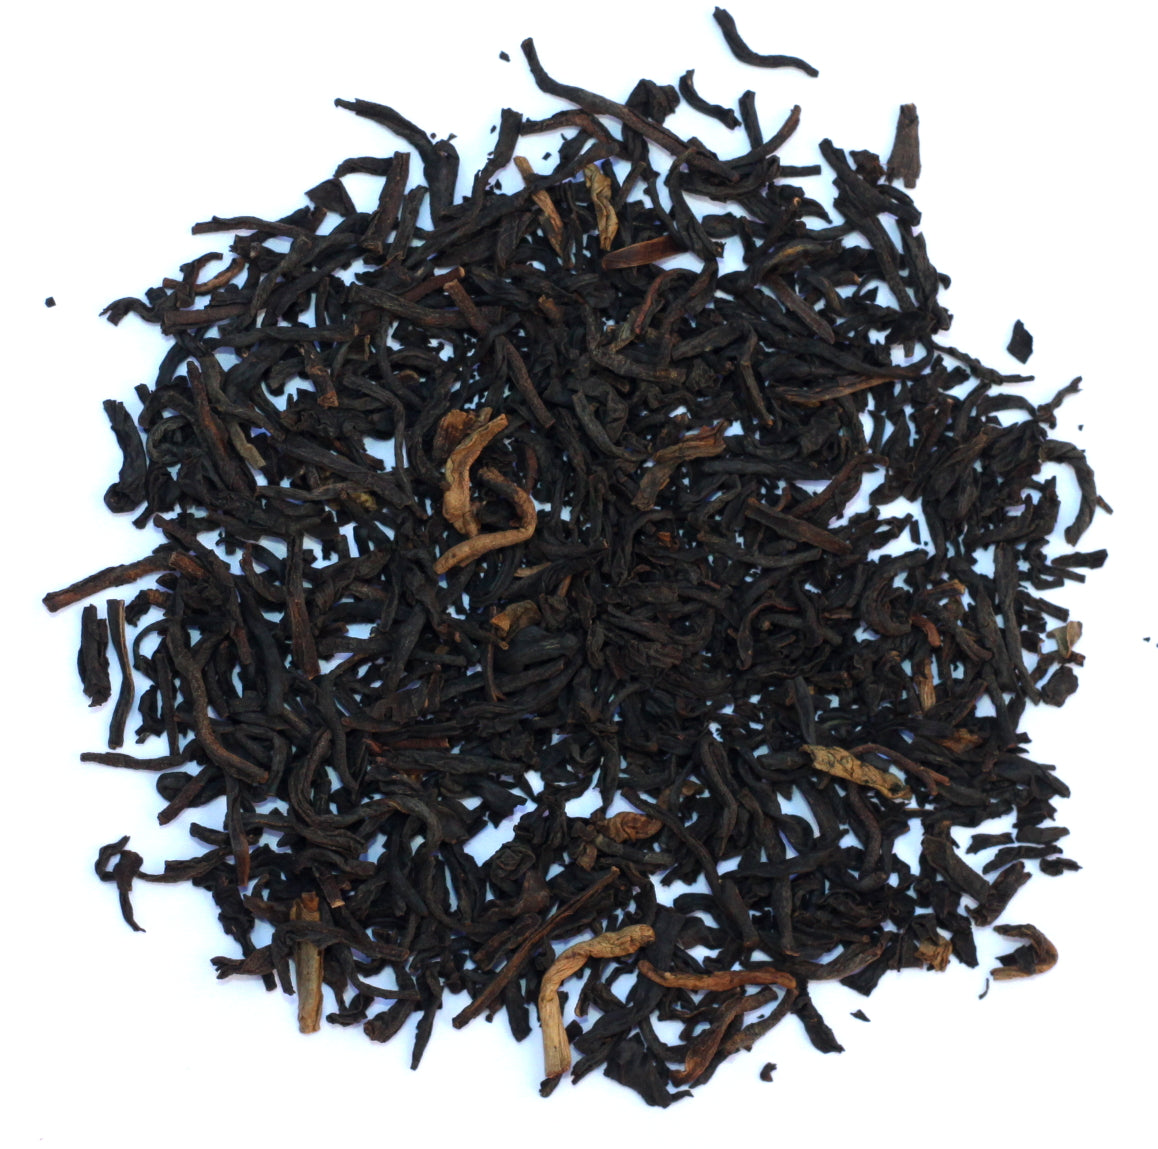 Decaf English Breakfast - Loose Black Leaf Tea